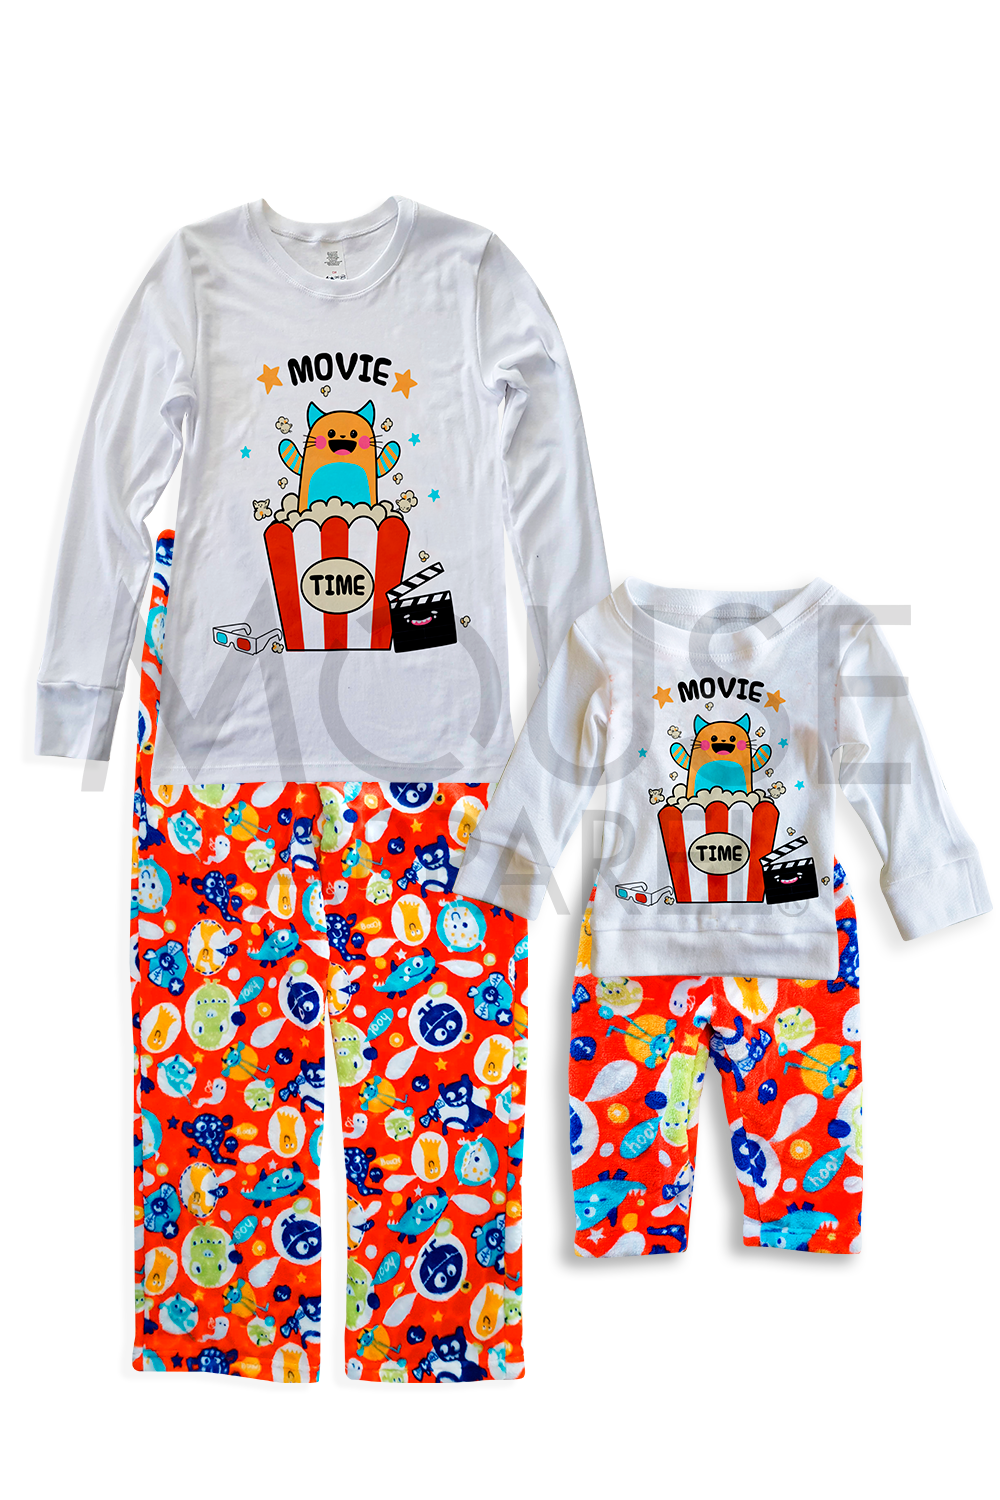 Pijama polar 6 a 24 meses. Movie time marcianos